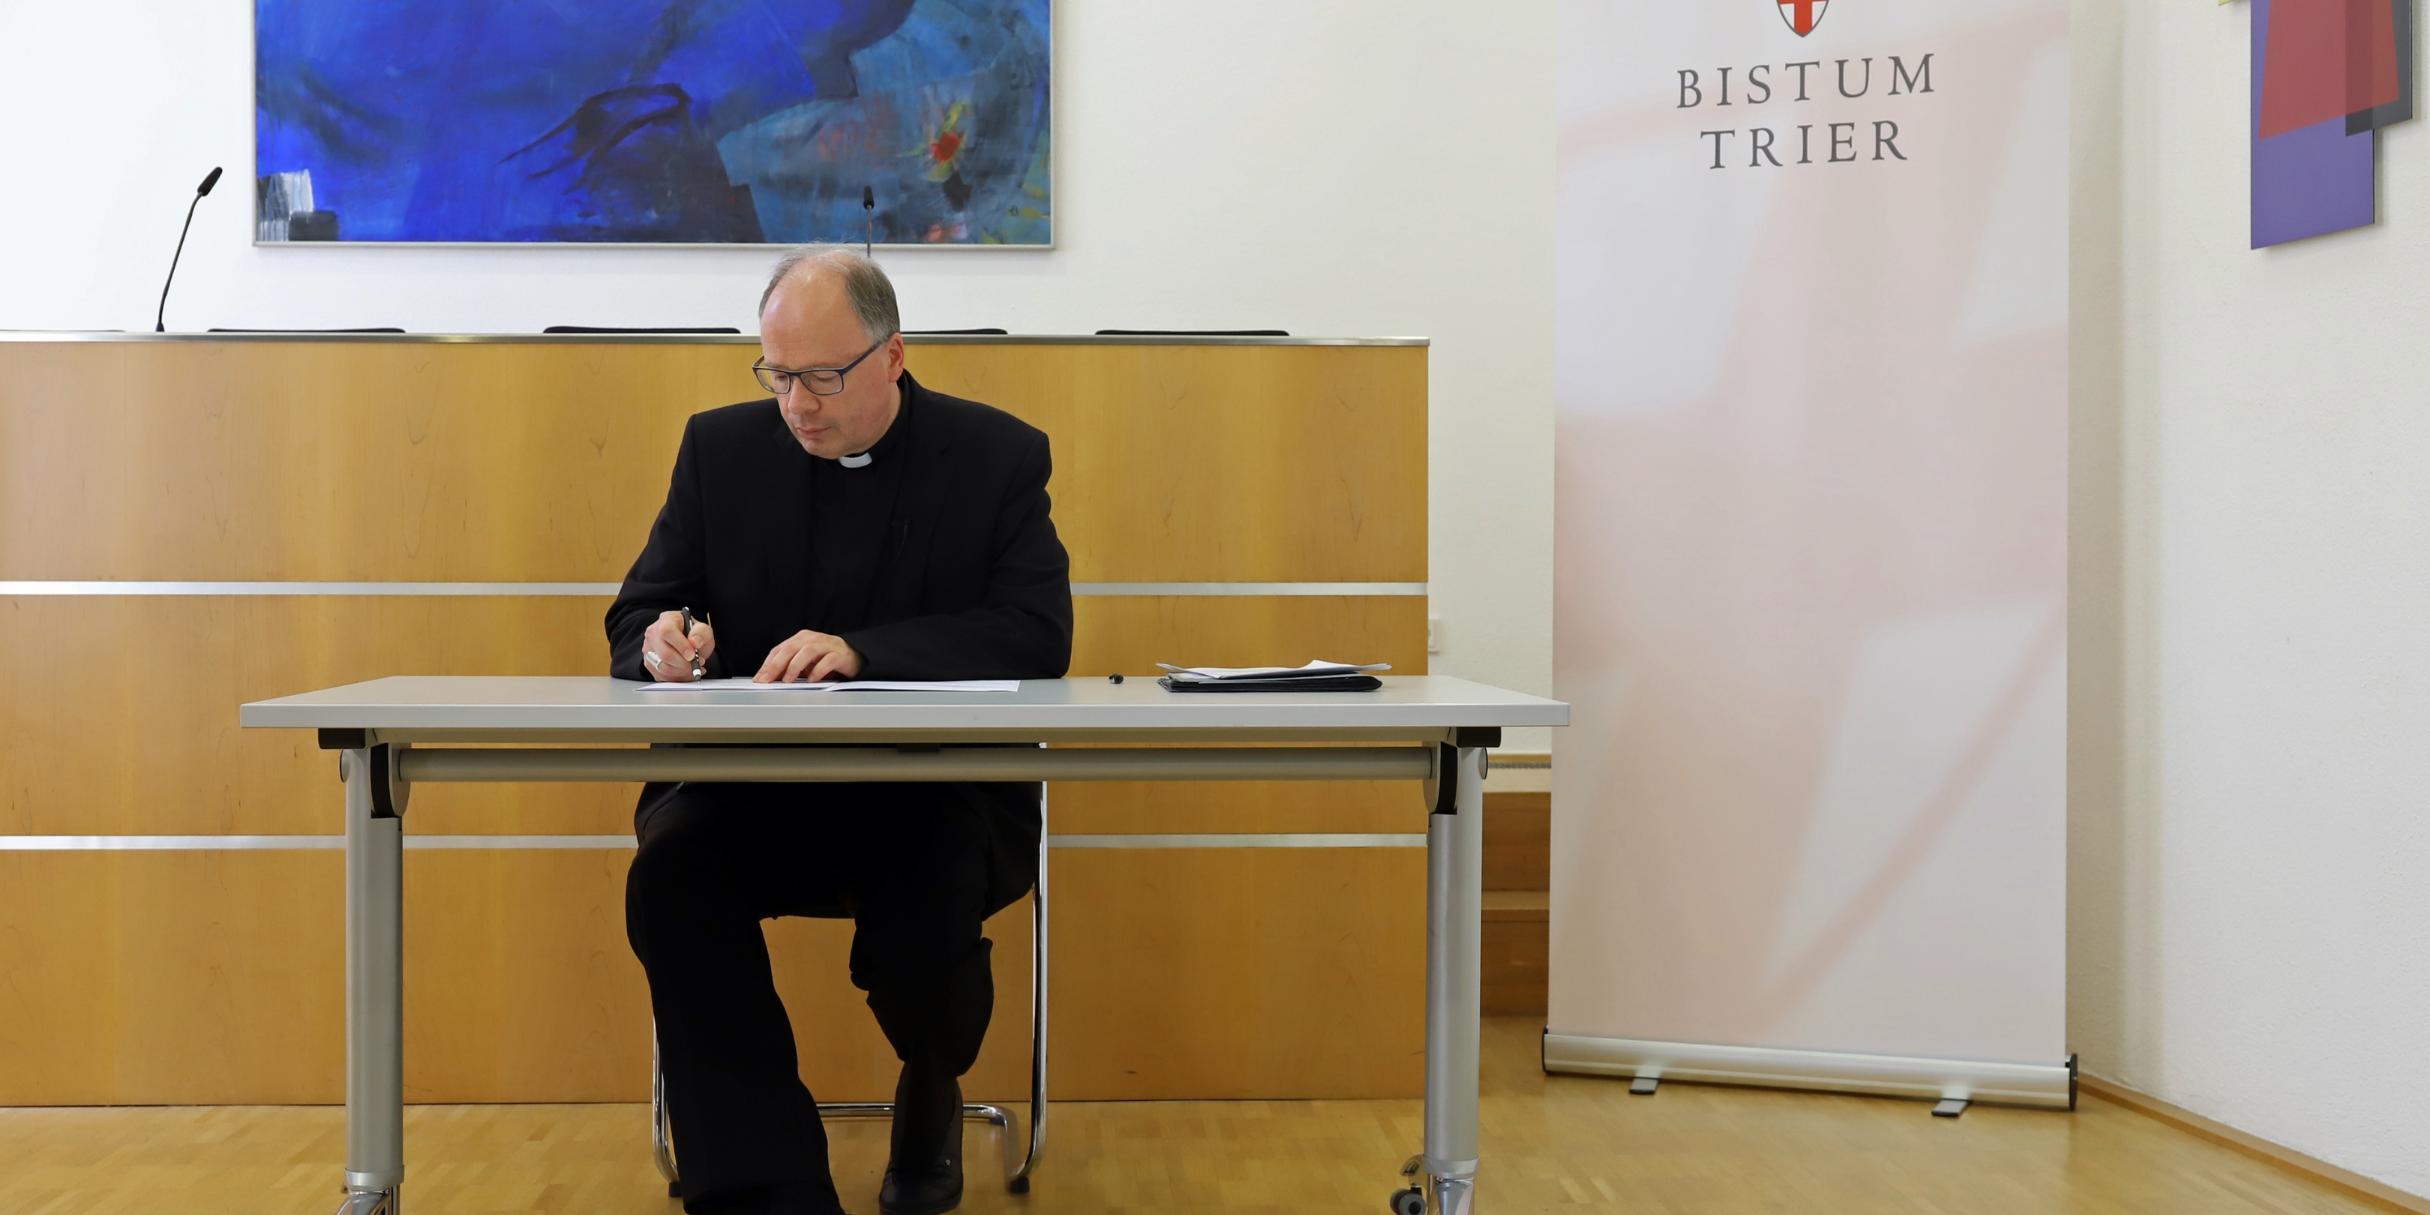 Bischof Ackermann unterzeichnet die „Gemeinsame Erklärung über verbindliche Kriterien und Standards für eine unabhängige Aufarbeitung von sexuellem Missbrauch in der katholischen Kirche in Deutschland“